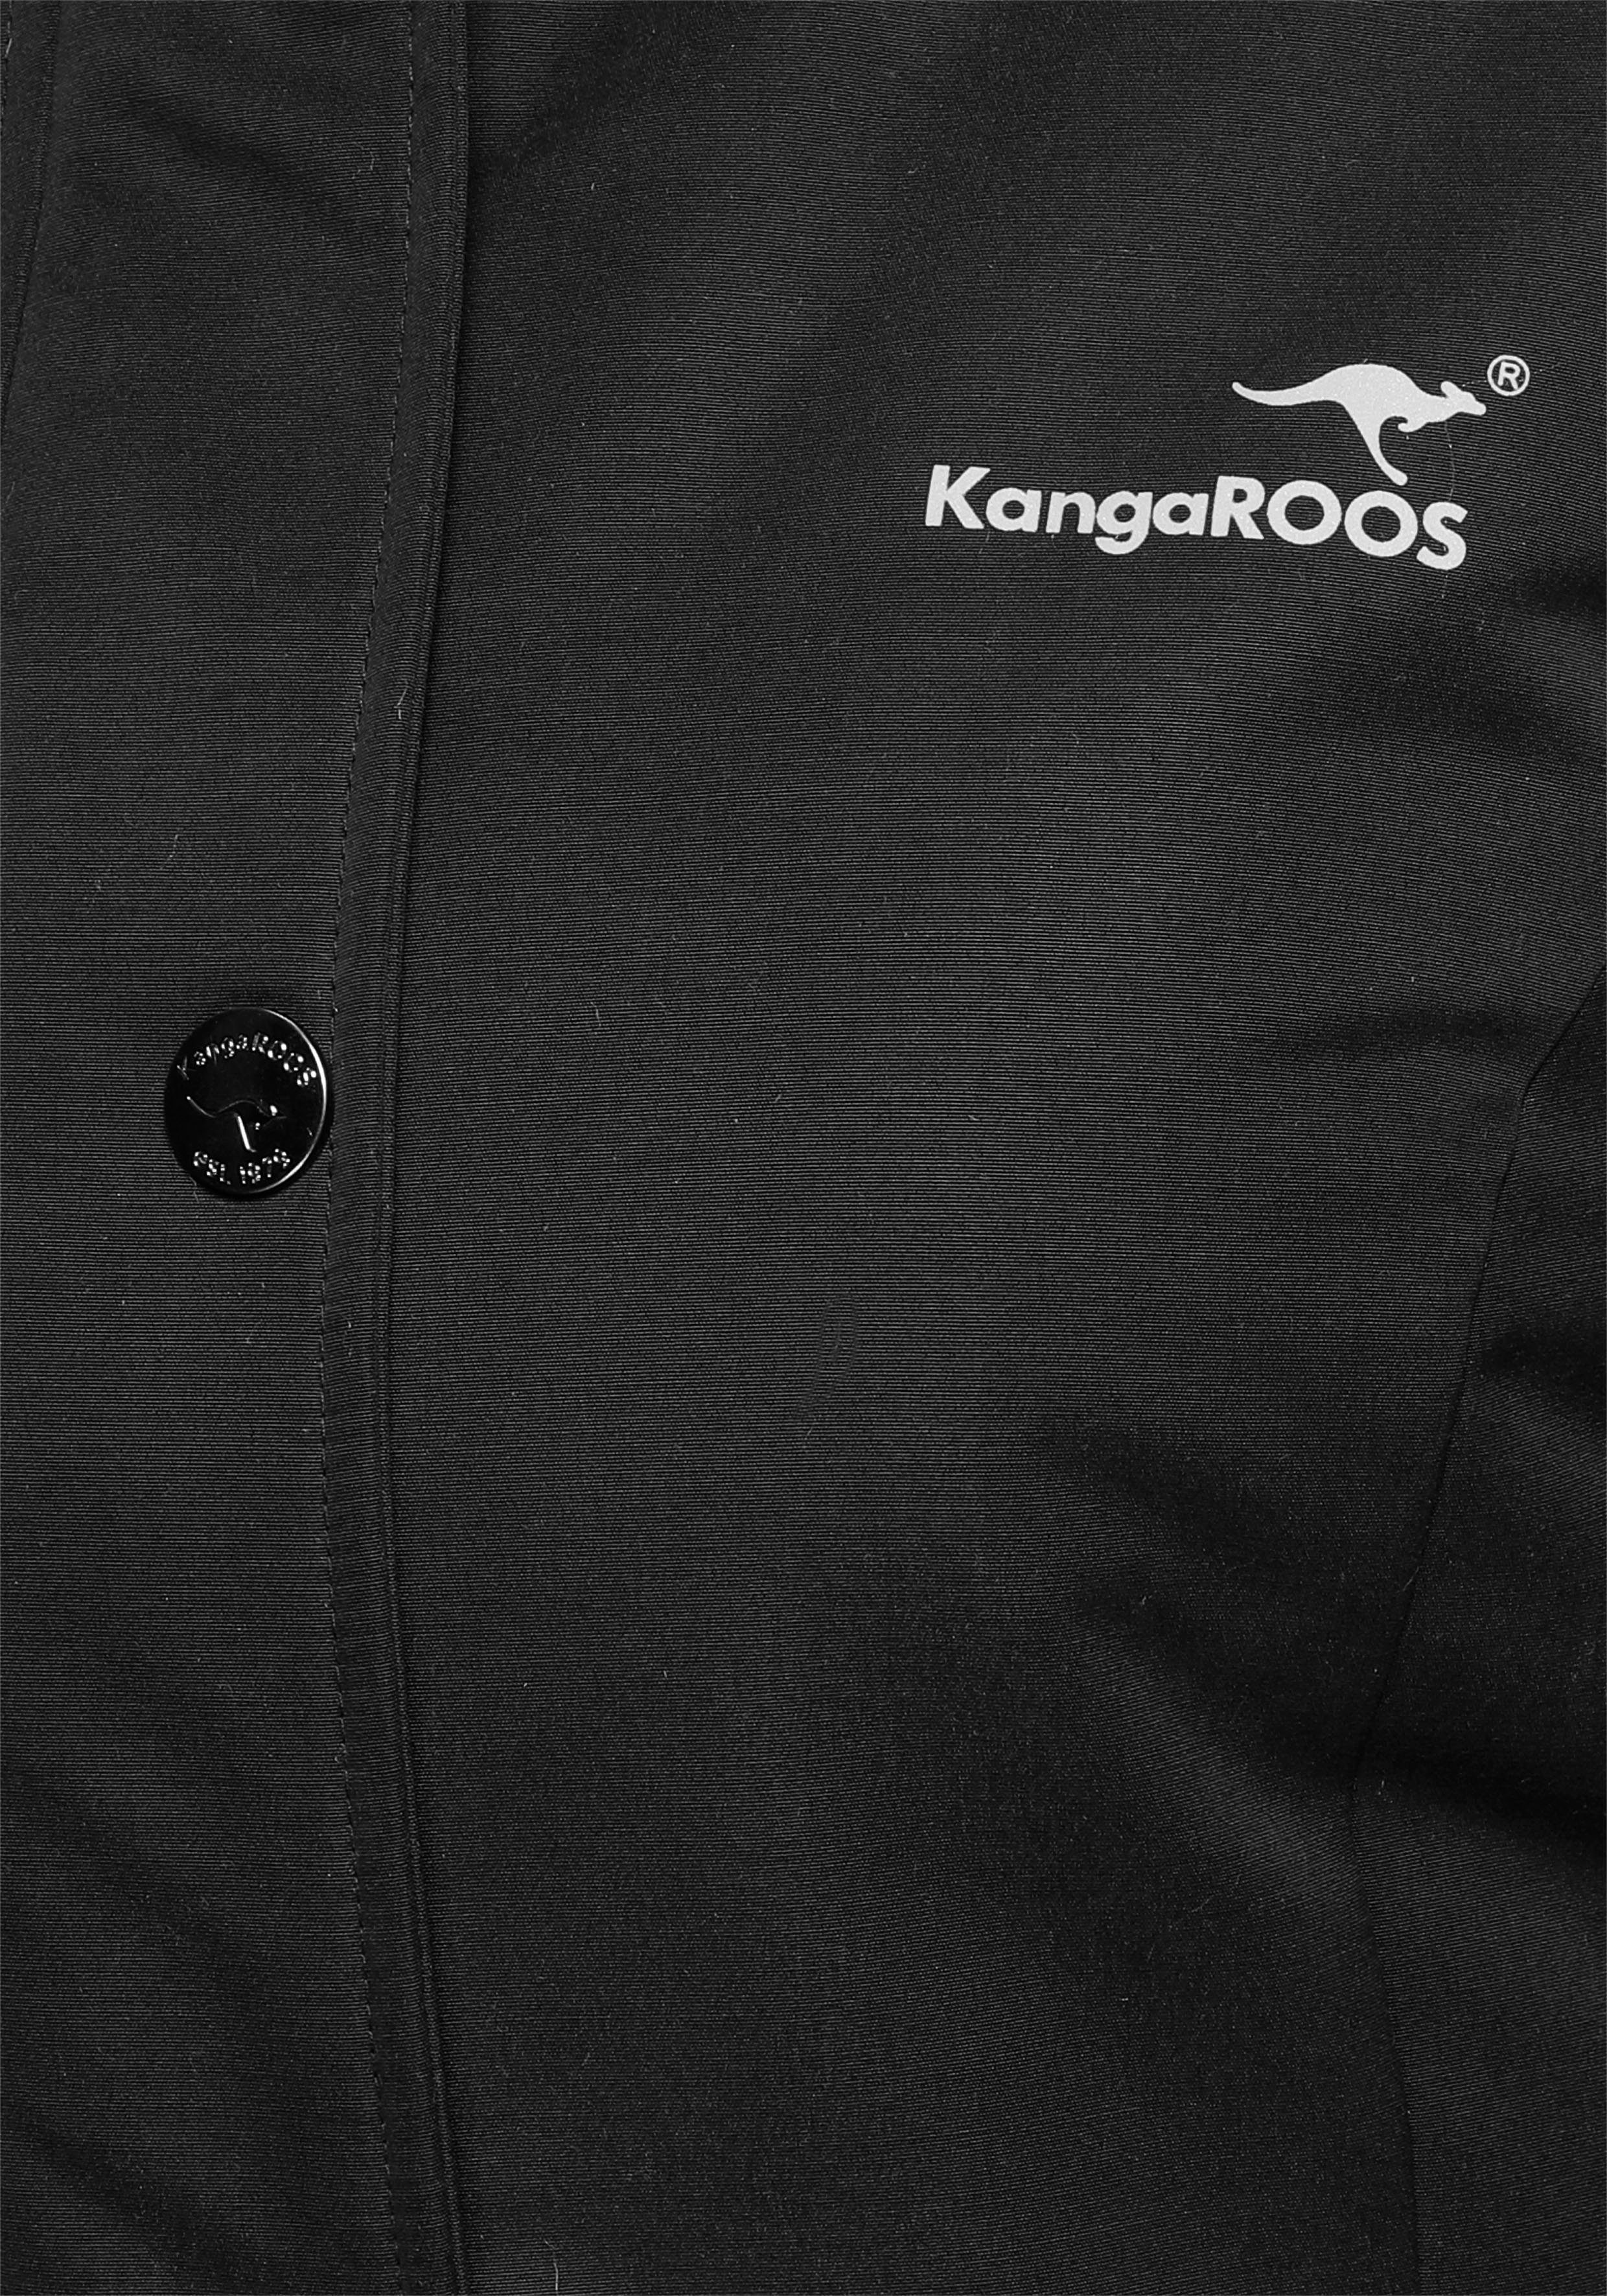 KangaROOS Langjacke mit Taschen und 2-Wege-Reißverschluss vielen Material) schwarz aus (Langjacke nachhaltigem